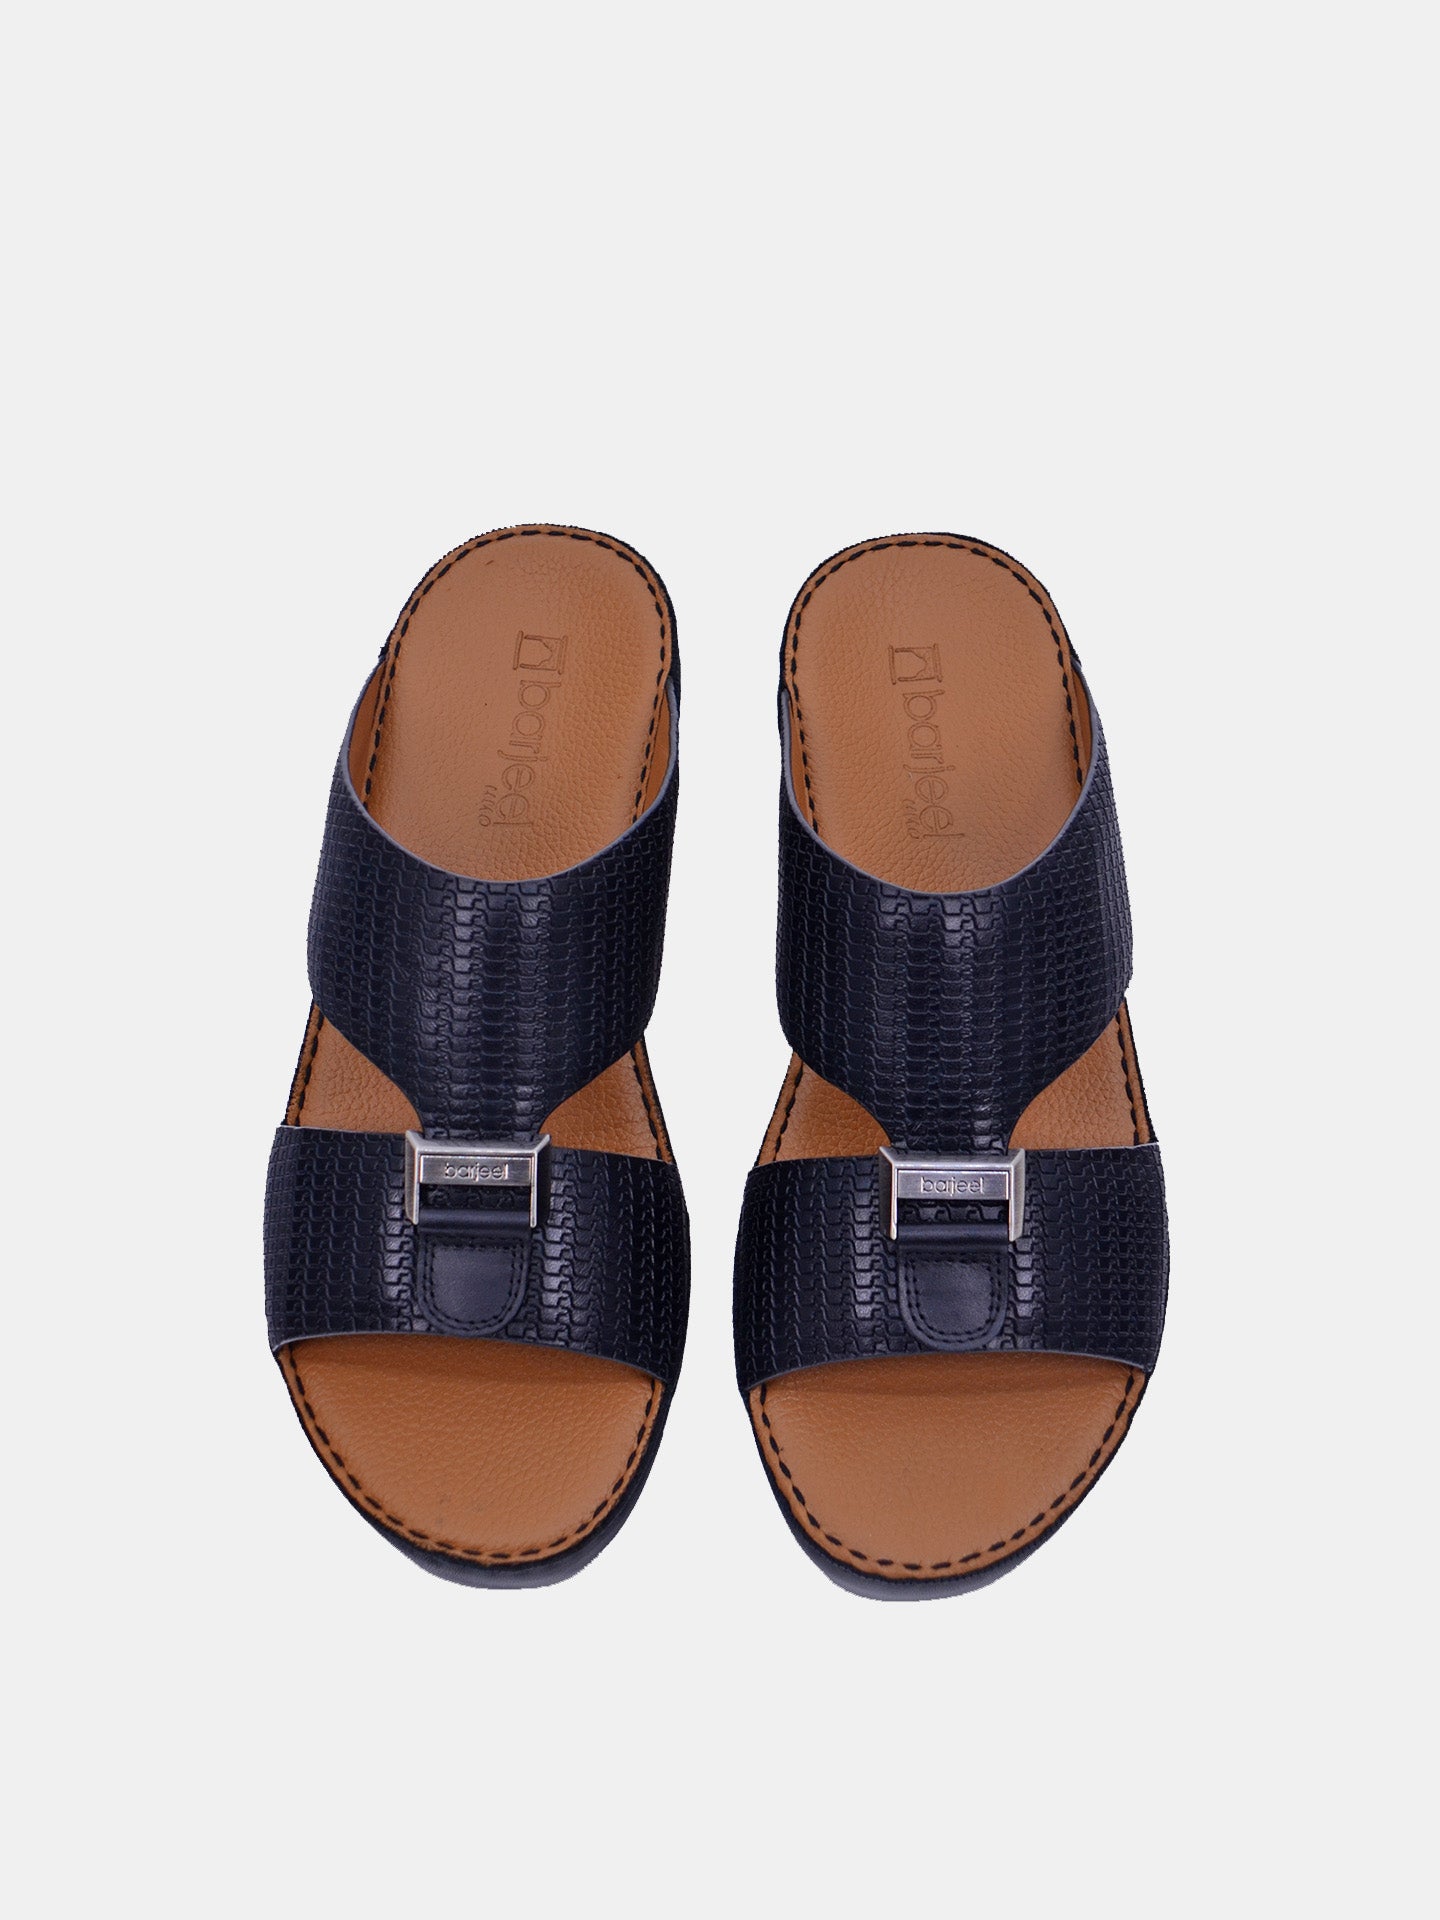 Barjeel Uno BSP1-54 Men's Arabic Sandals #color_Black